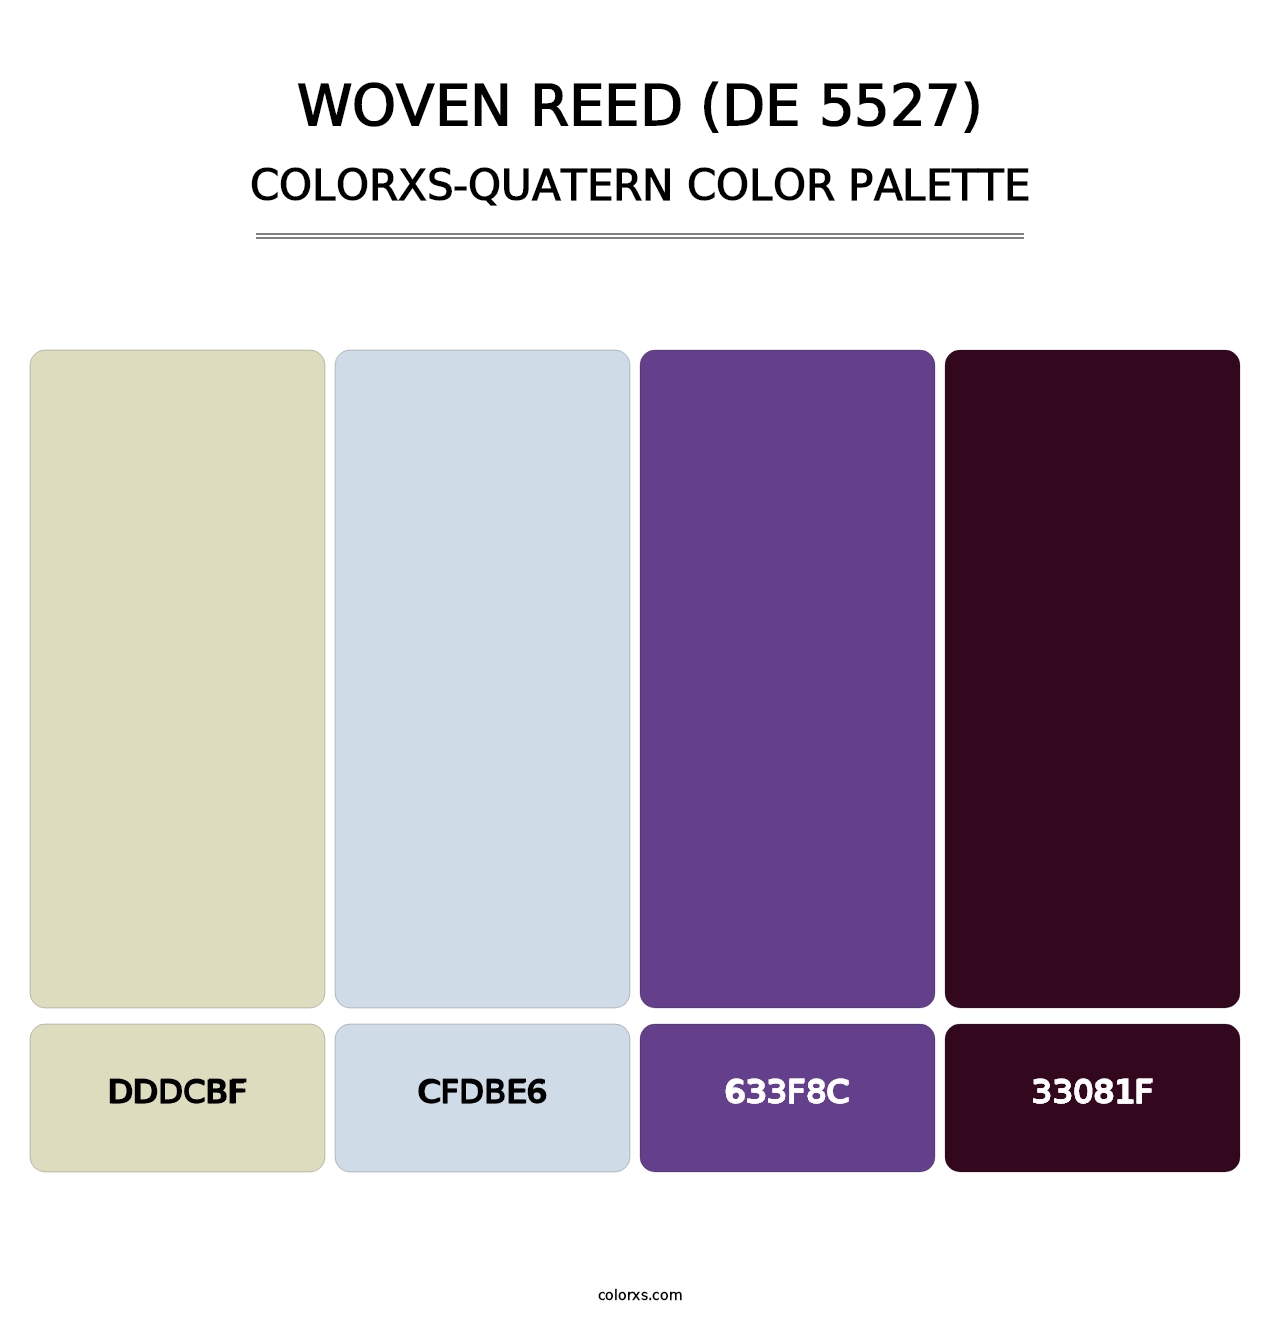 Woven Reed (DE 5527) - Colorxs Quatern Palette